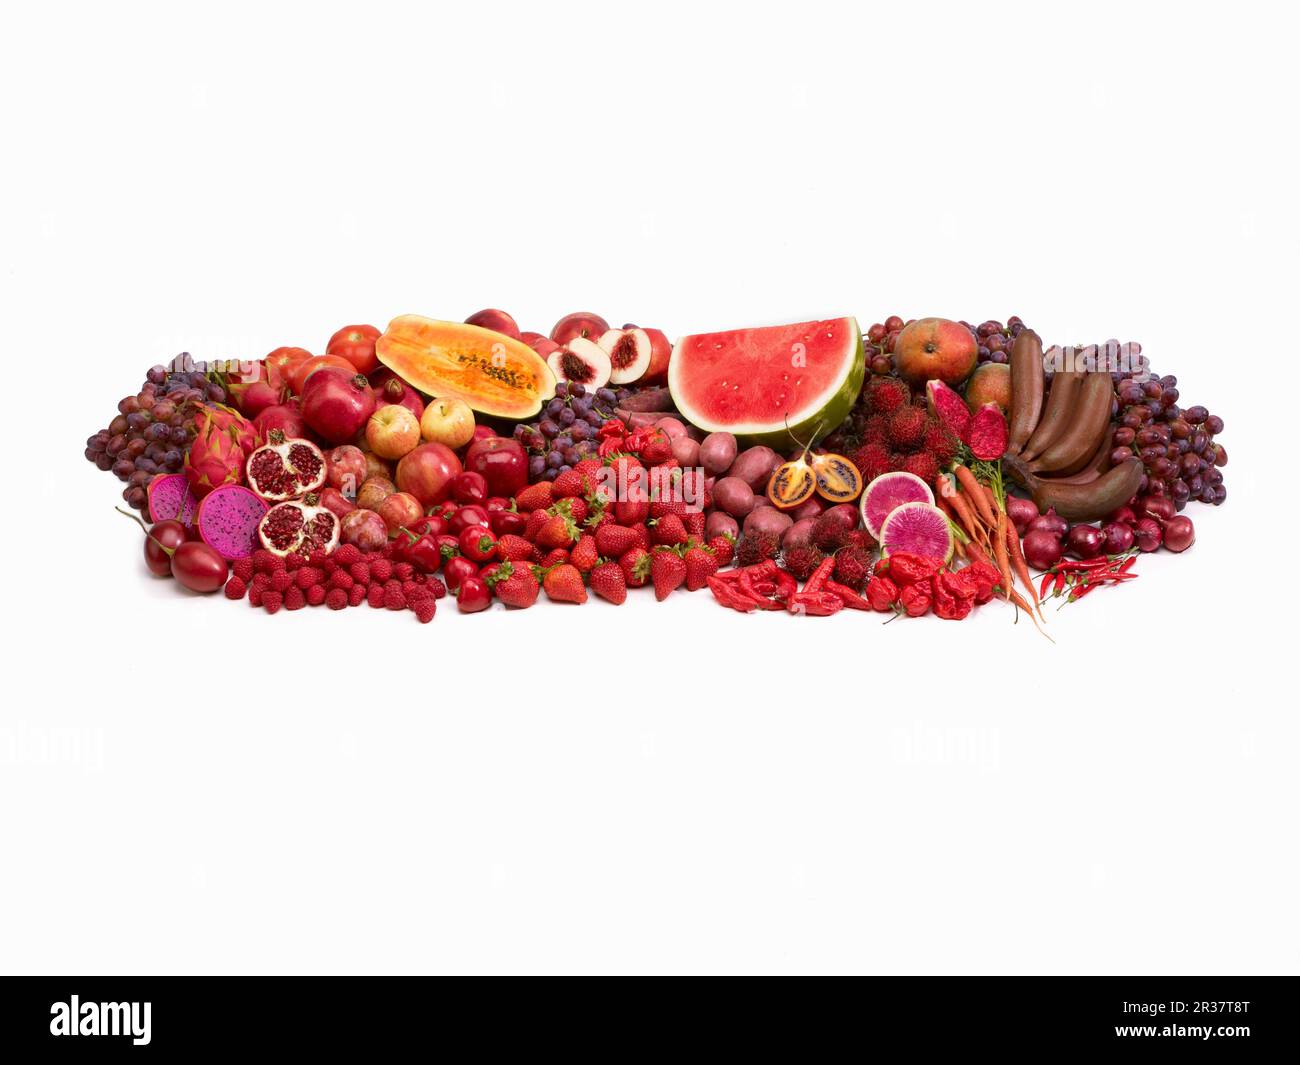 Frutta e verdura rossa di fronte a uno sfondo bianco Foto Stock